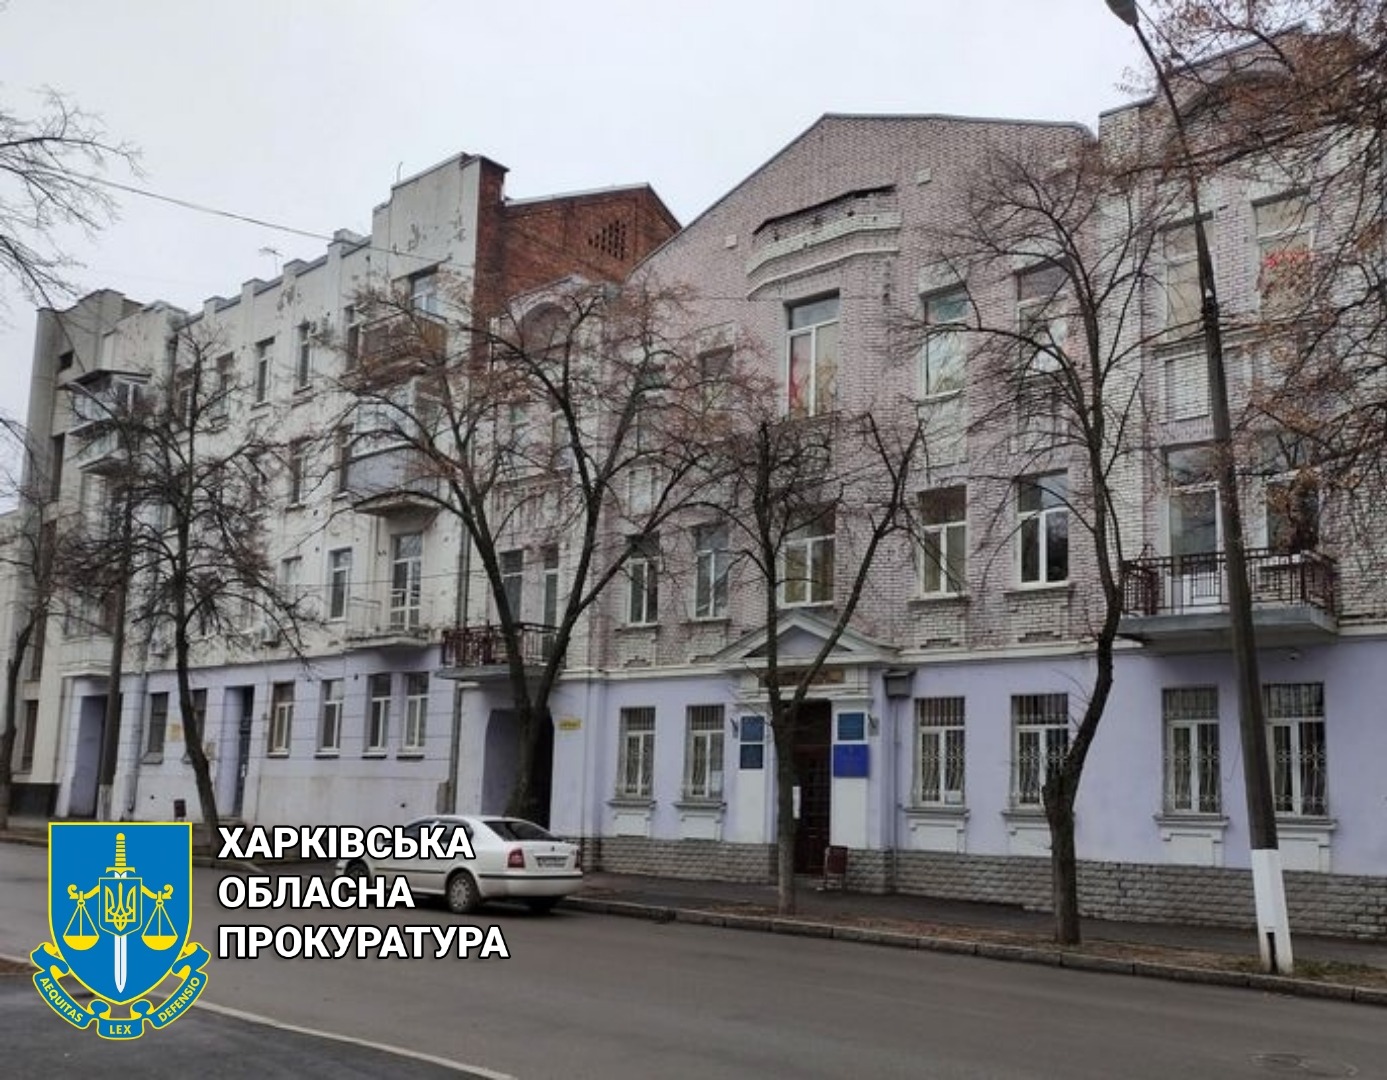 Харківській міській територіальній громаді буде повернуто нерухоме майно вартістю 3,2 млн грн, – прокуратура